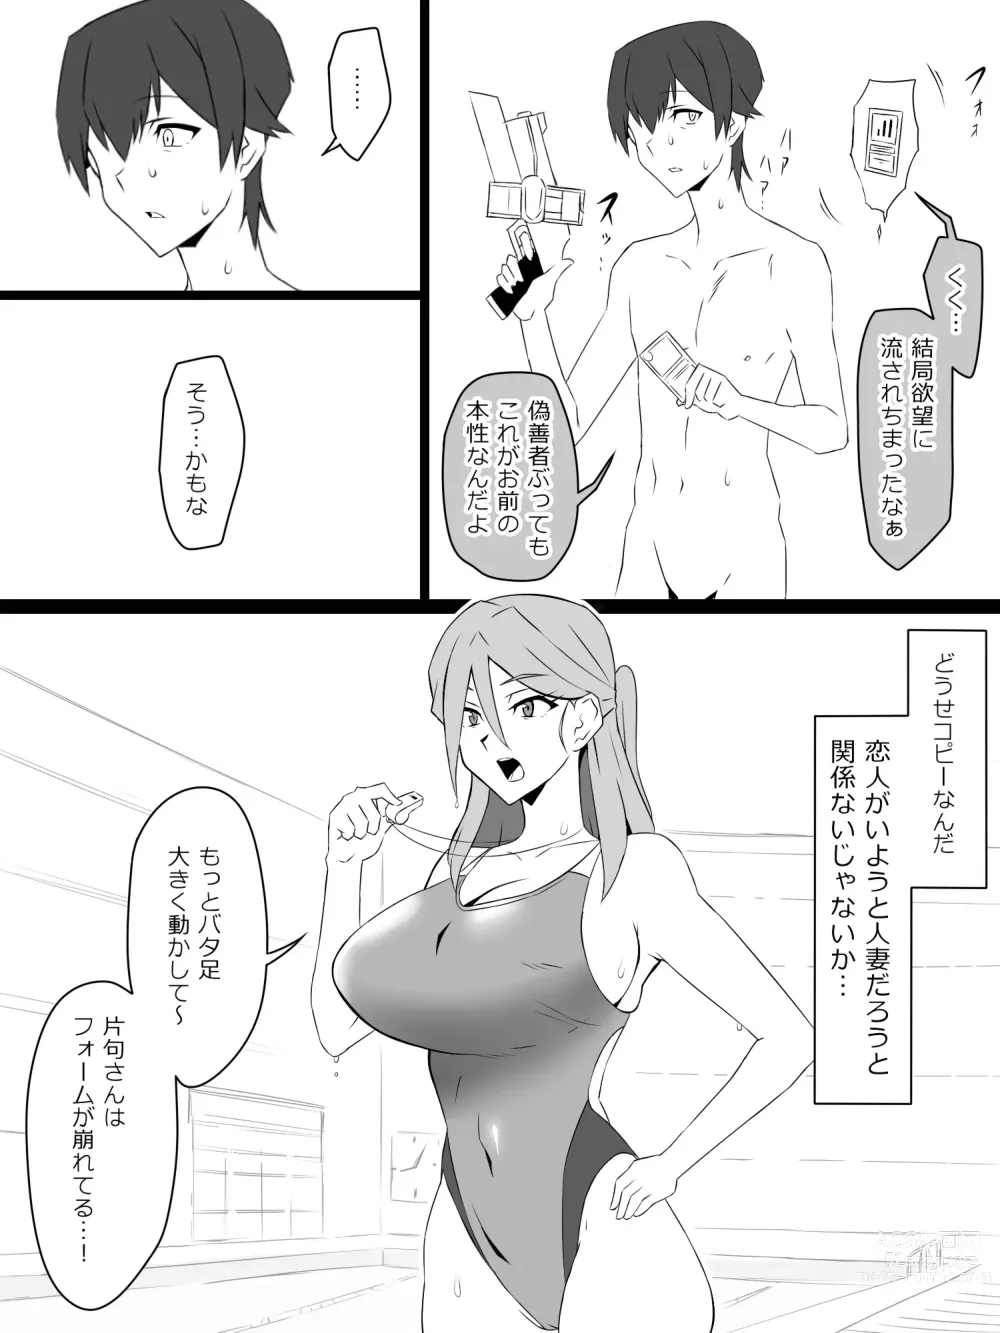 Page 16 of doujinshi Shoukanjuu DX DeliHealizer